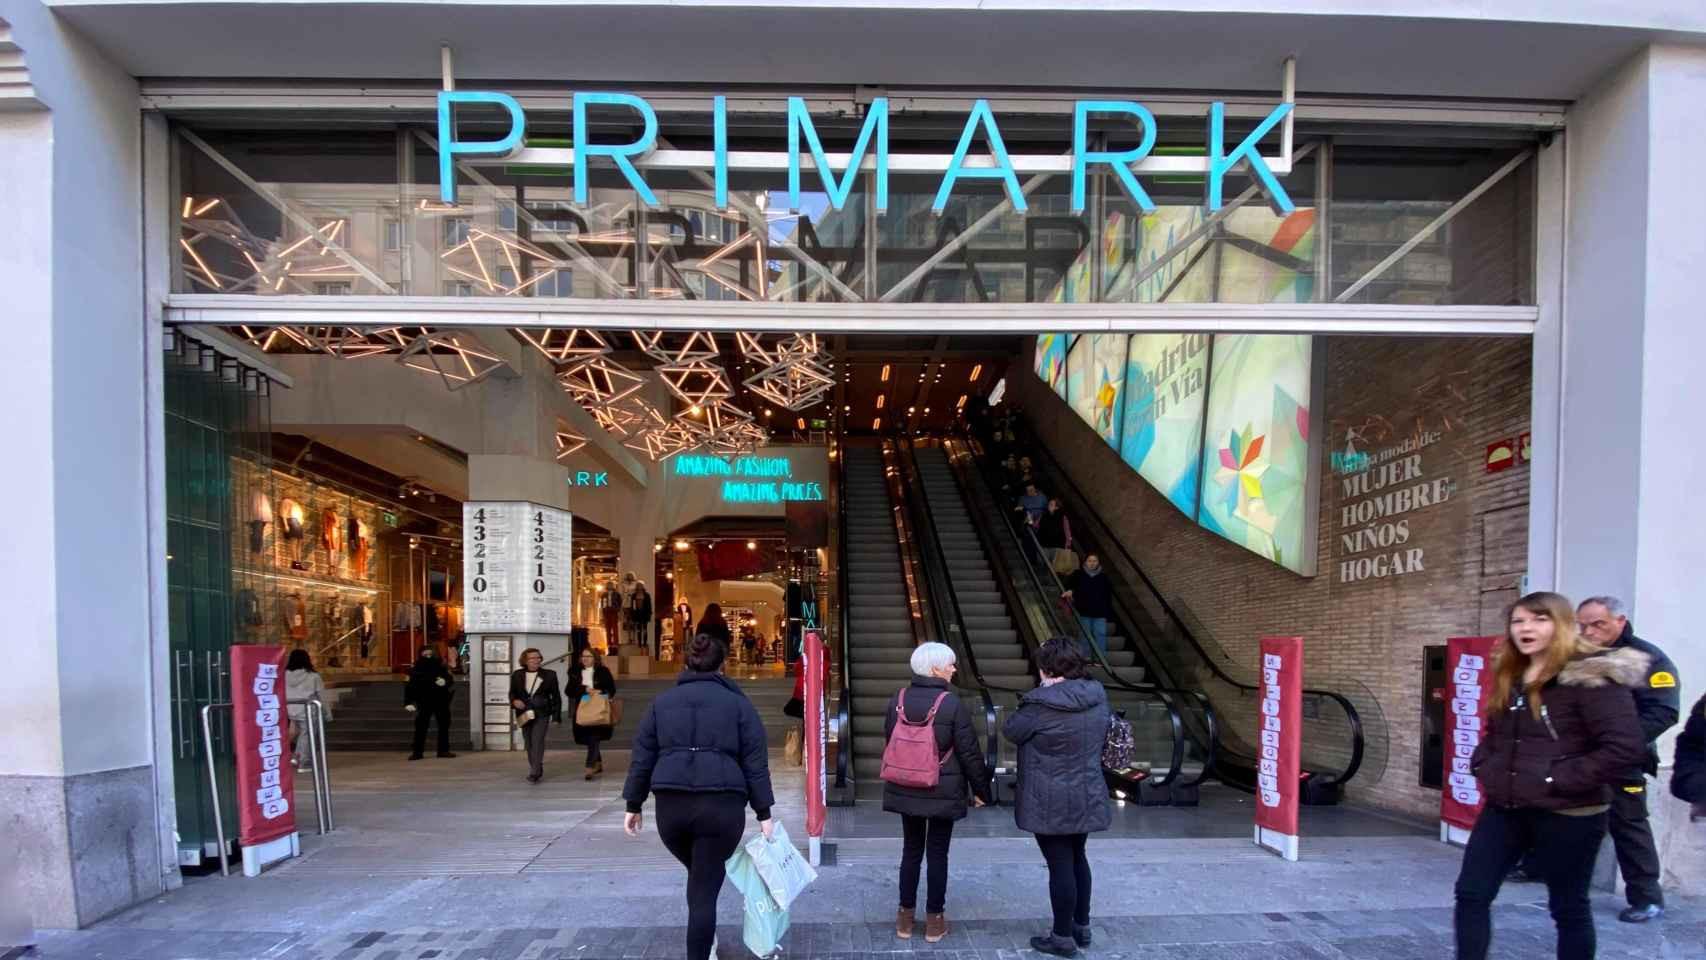 Estas son las zonas de Madrid las que Primark abrirá tiendas